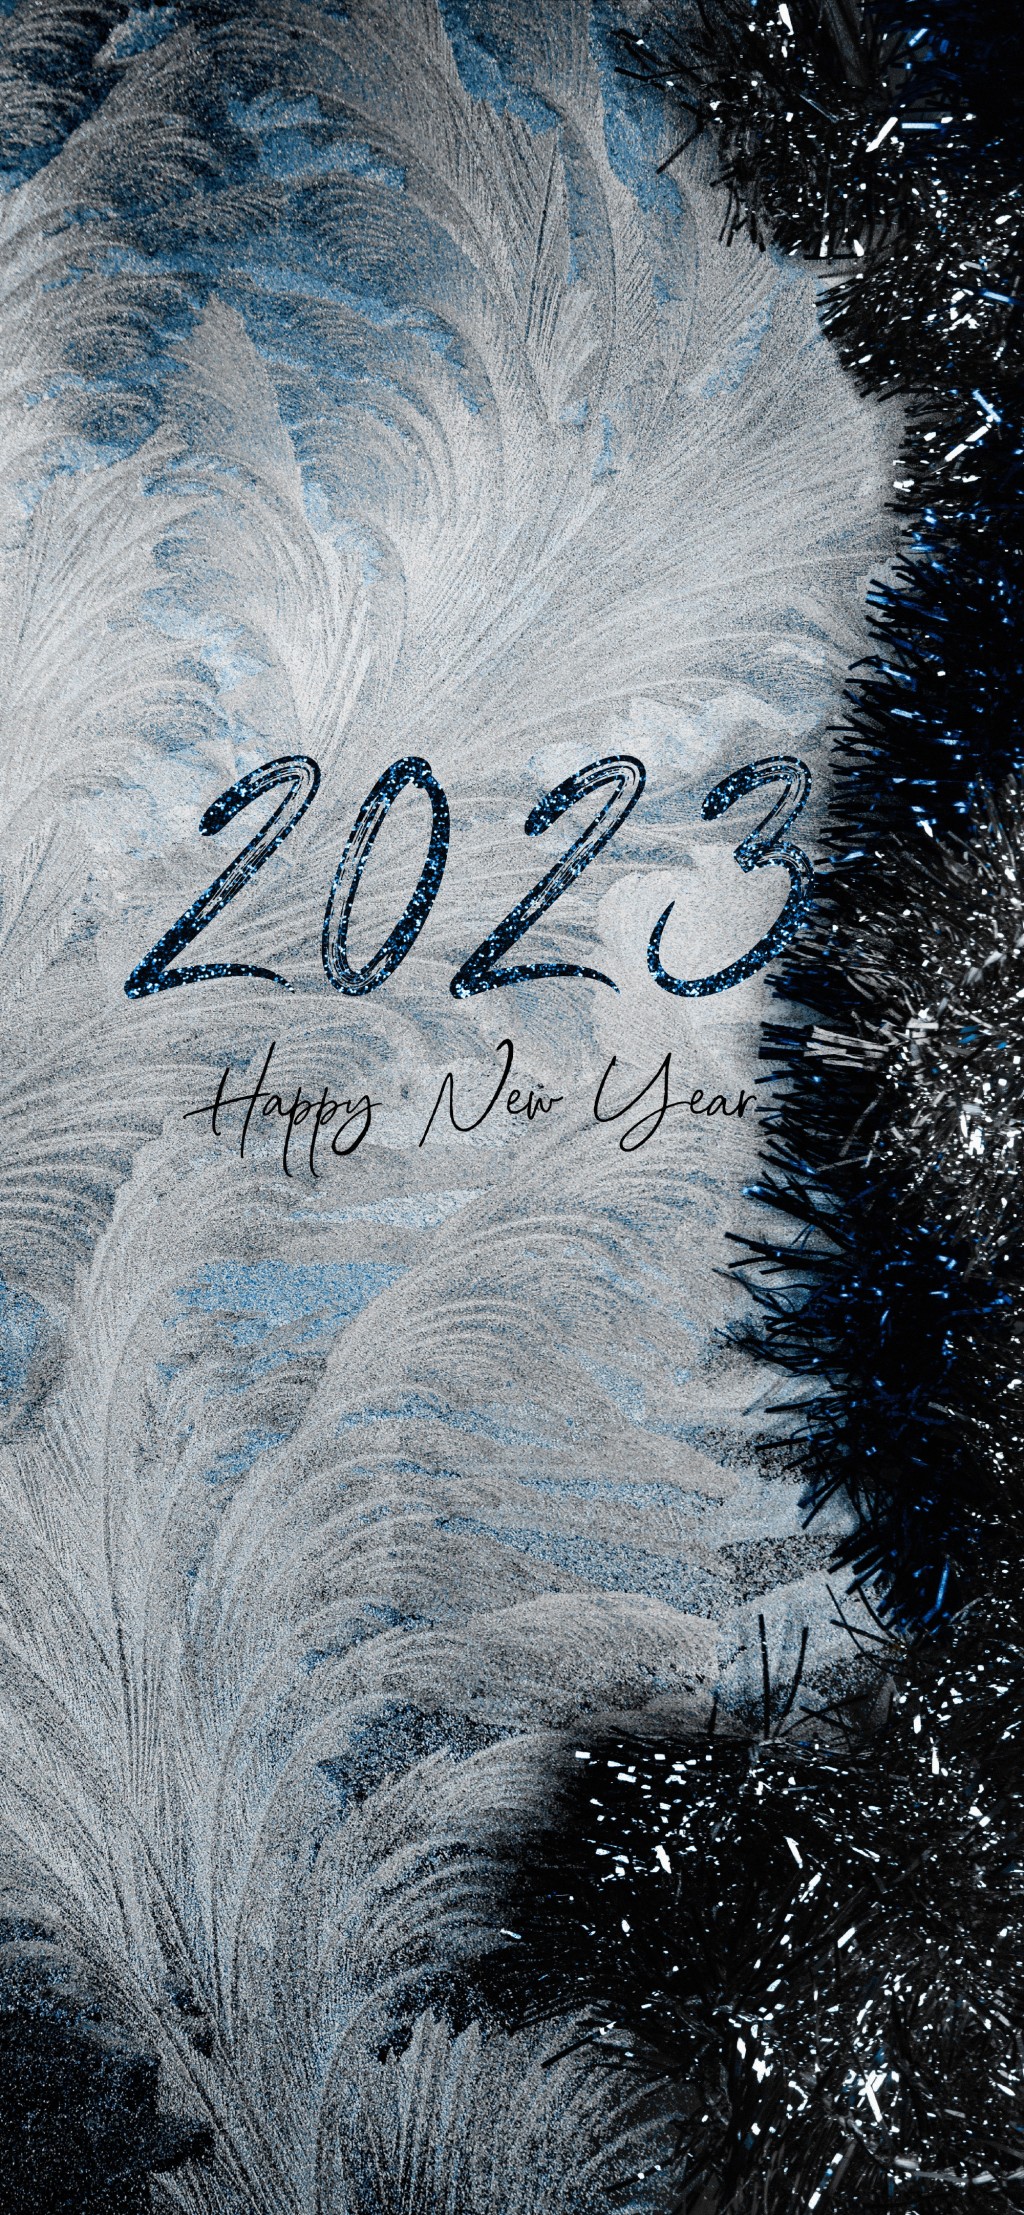 你好2023新年快乐手机壁纸